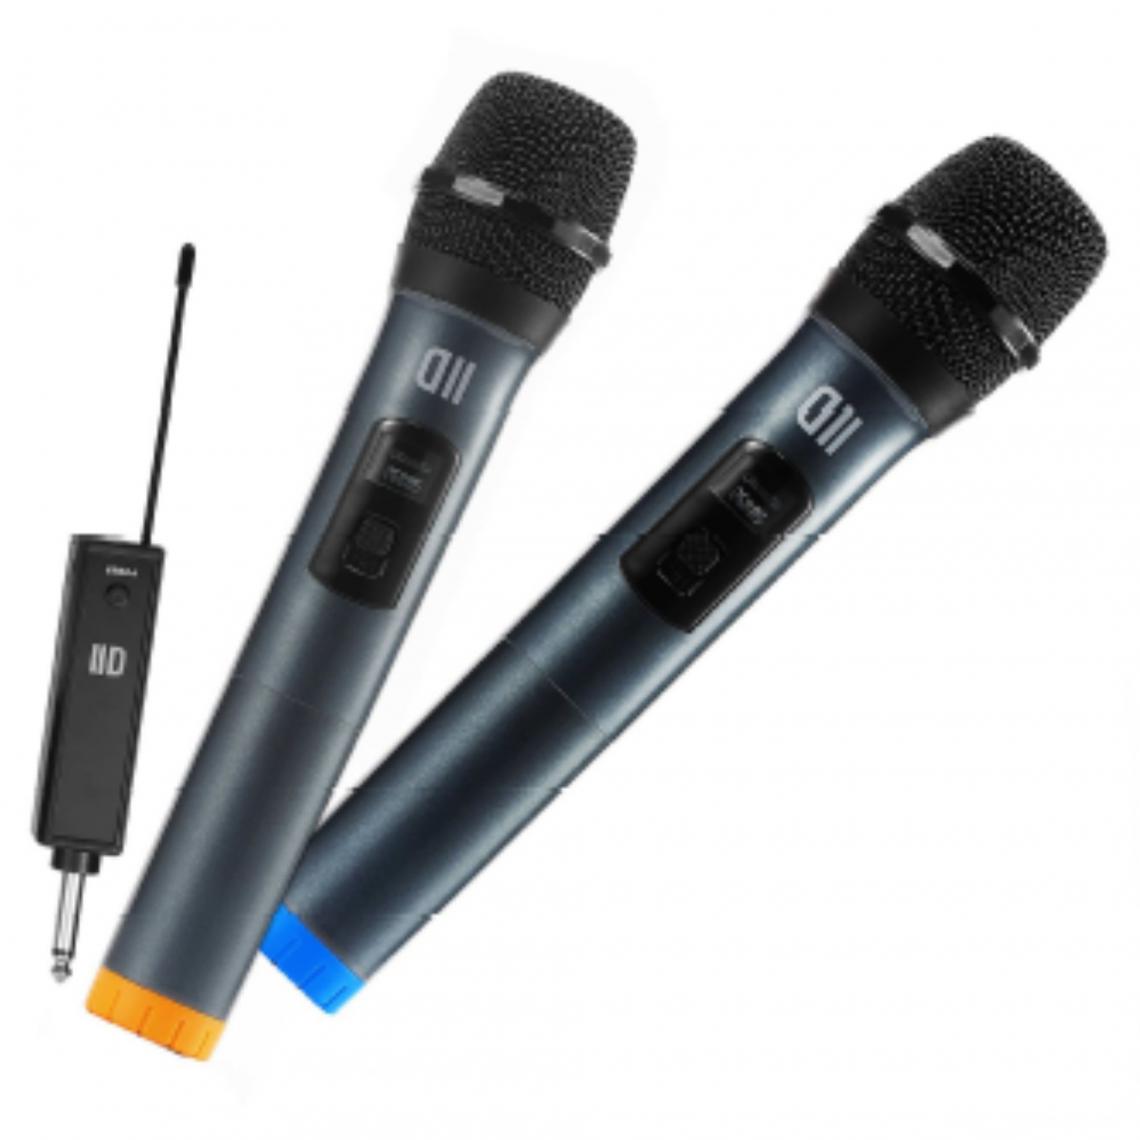 D2 Diffusion - D2 Pack 2 microphone dynamique DII sans fil avec écrans Omnidirectionnel récepteur rechargeable, jack 6.35mm pack de 2pcs - Micros sans fil